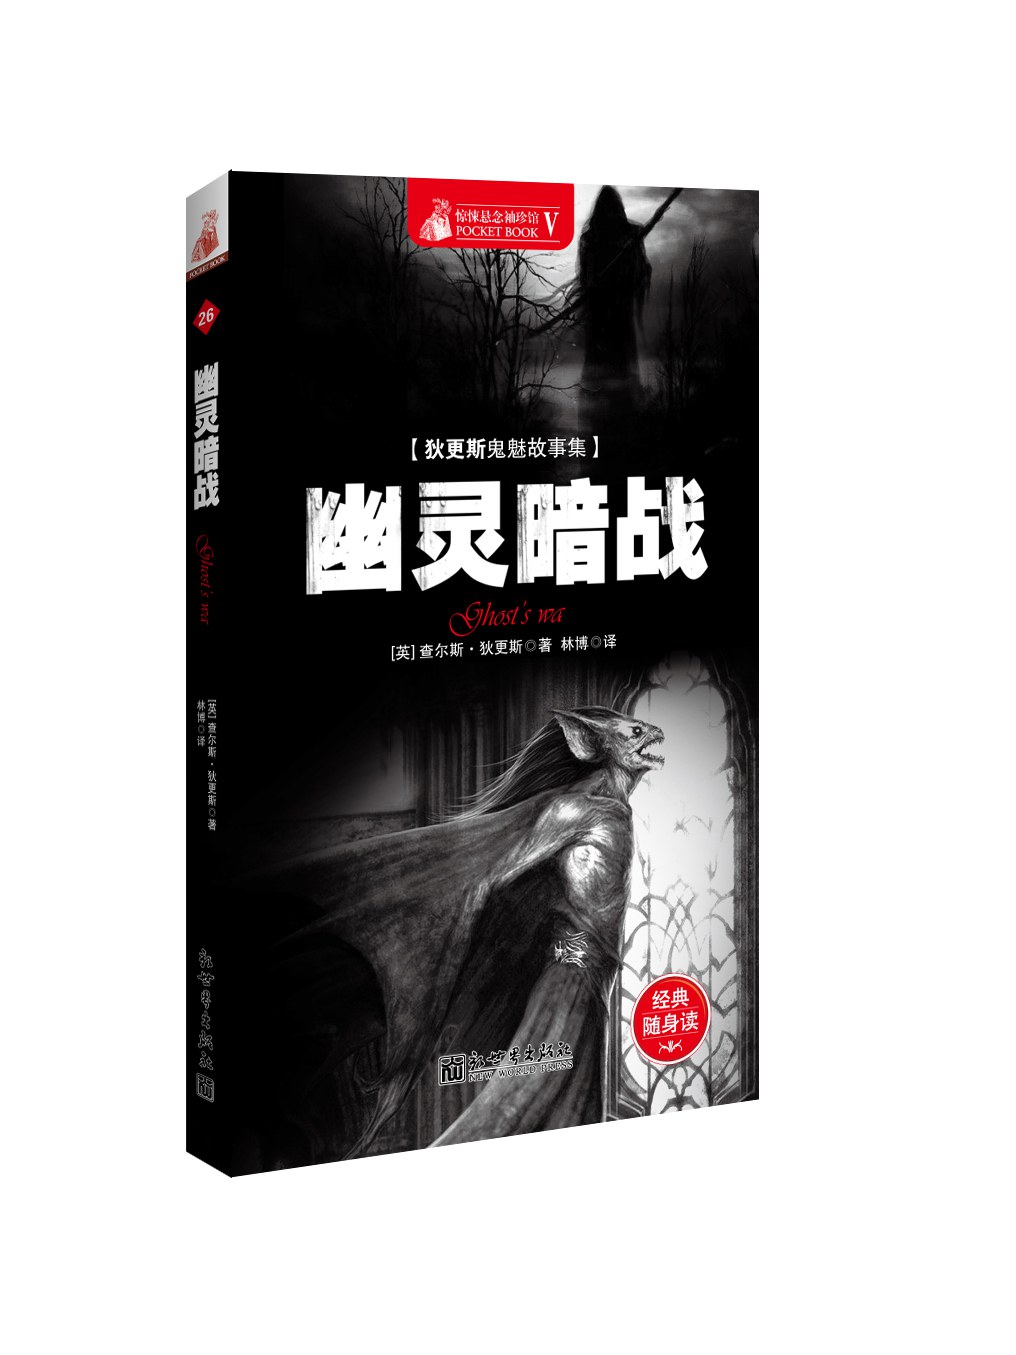 幽灵暗战 (简体中文 language, 2013, 新世界出版社)